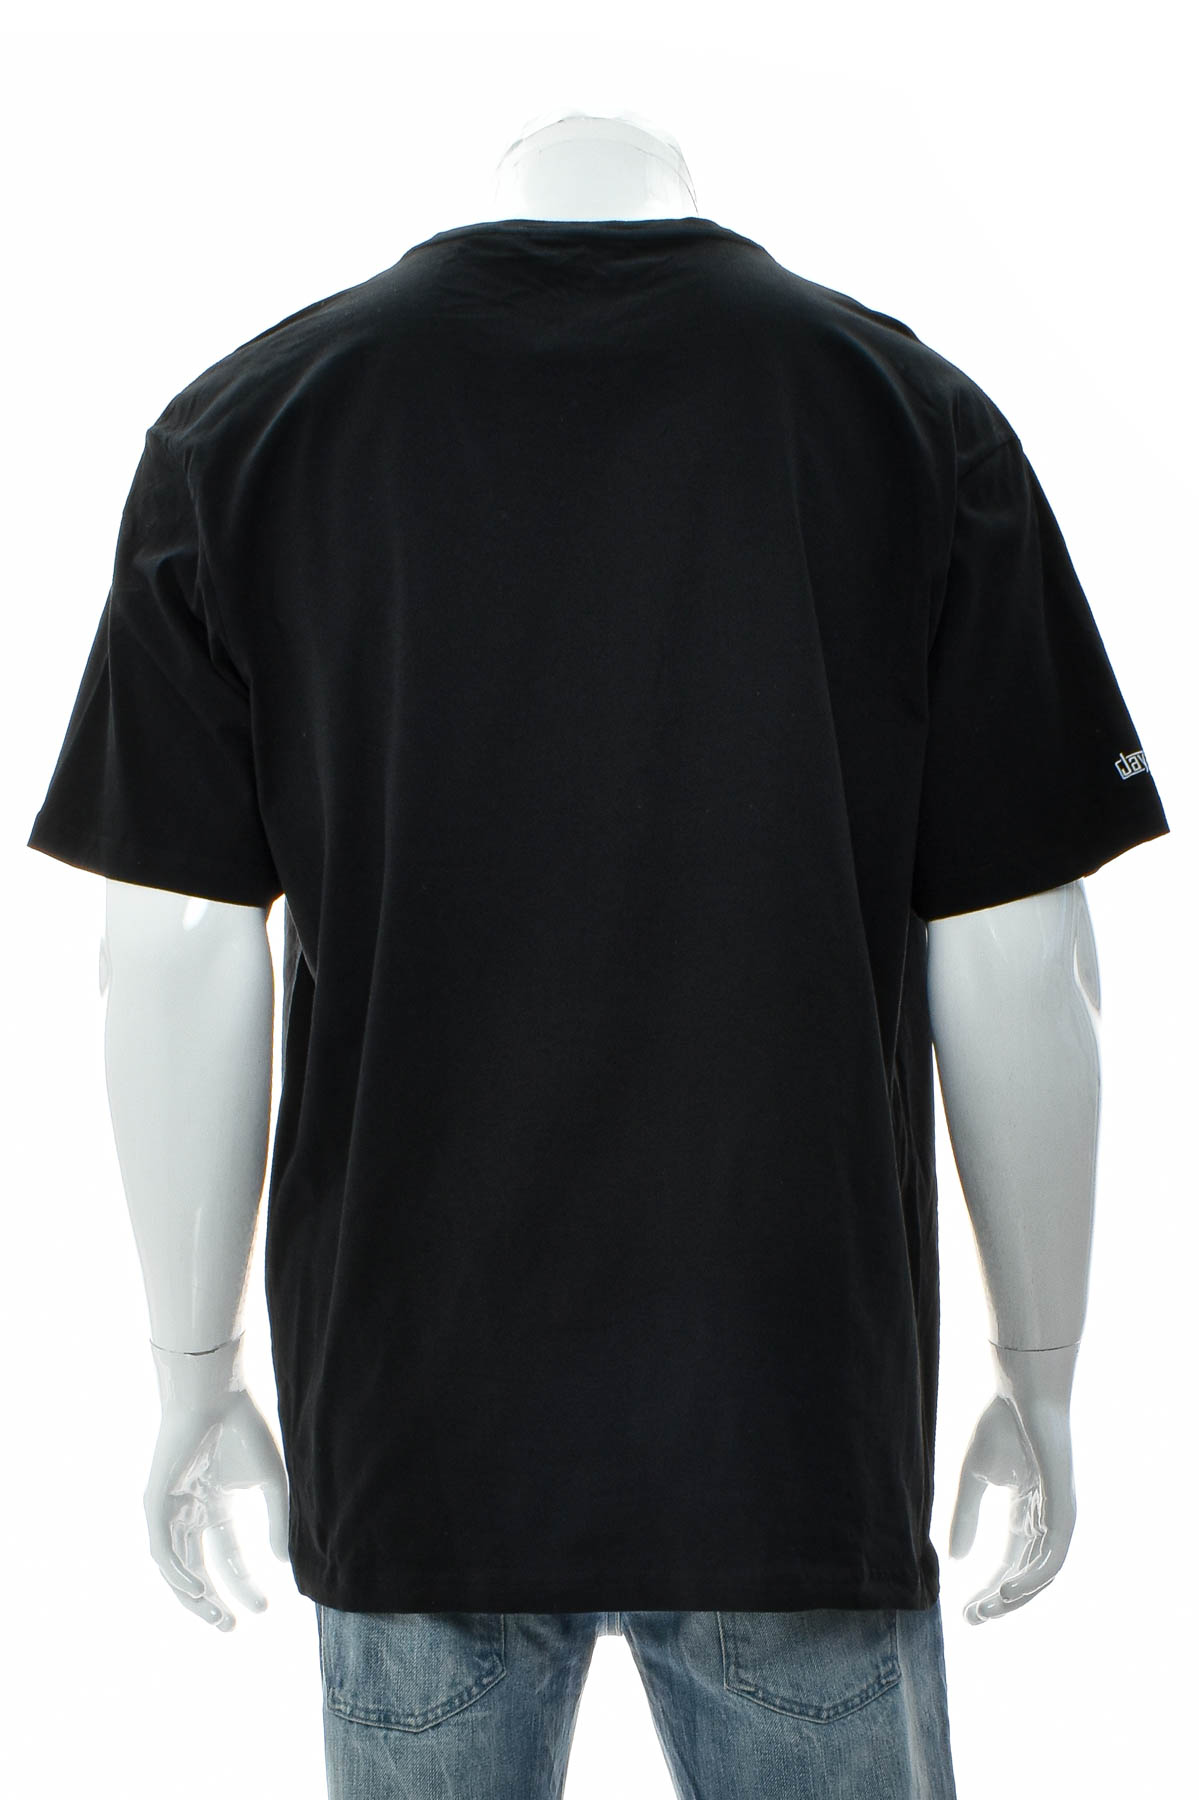 Αντρική μπλούζα - SONAR Clothing - 1